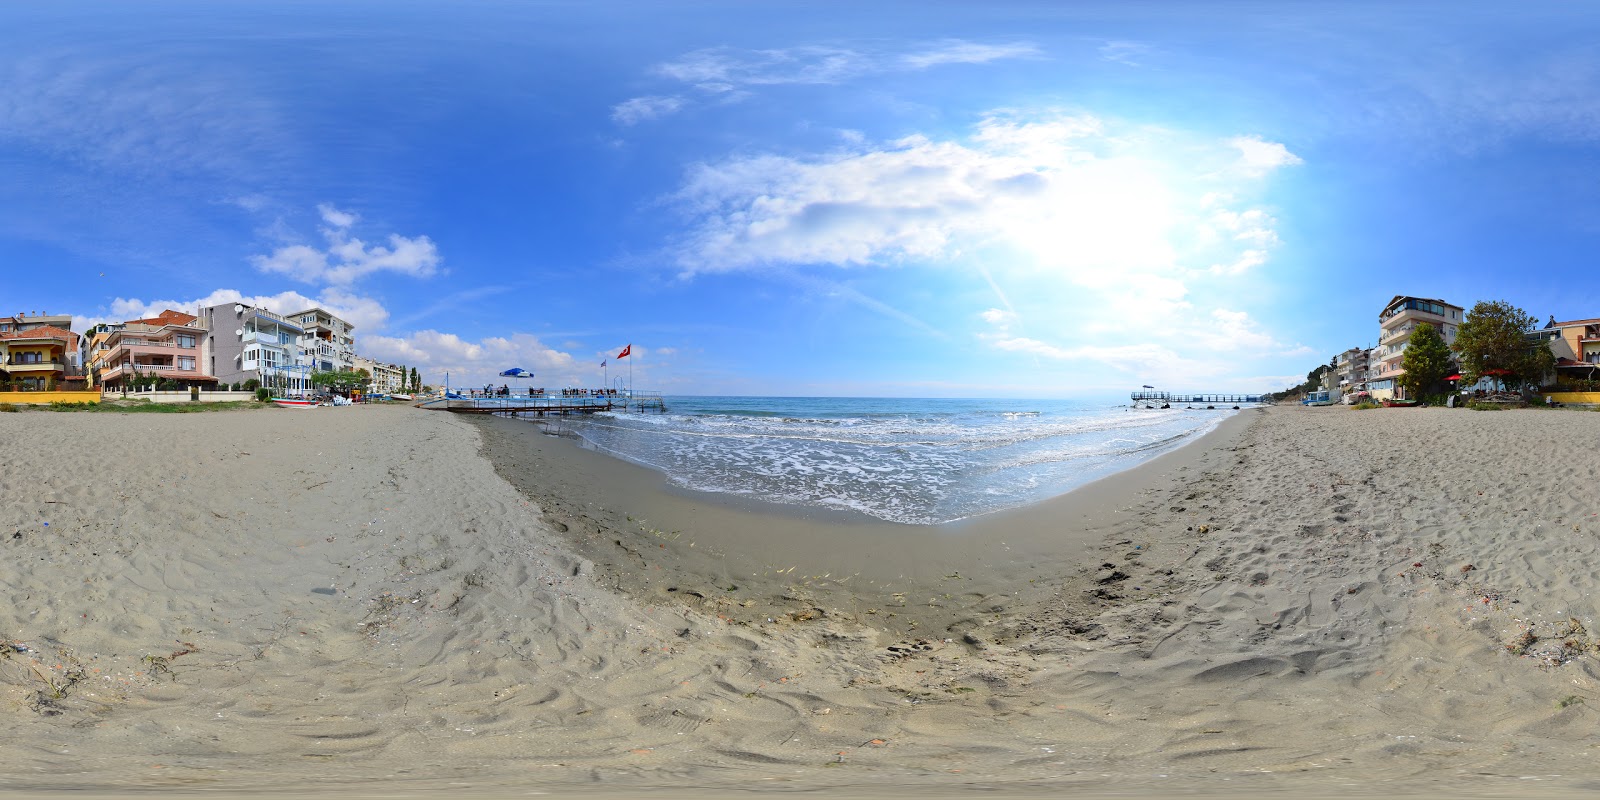 Foto af Altinova beach - populært sted blandt afslapningskendere